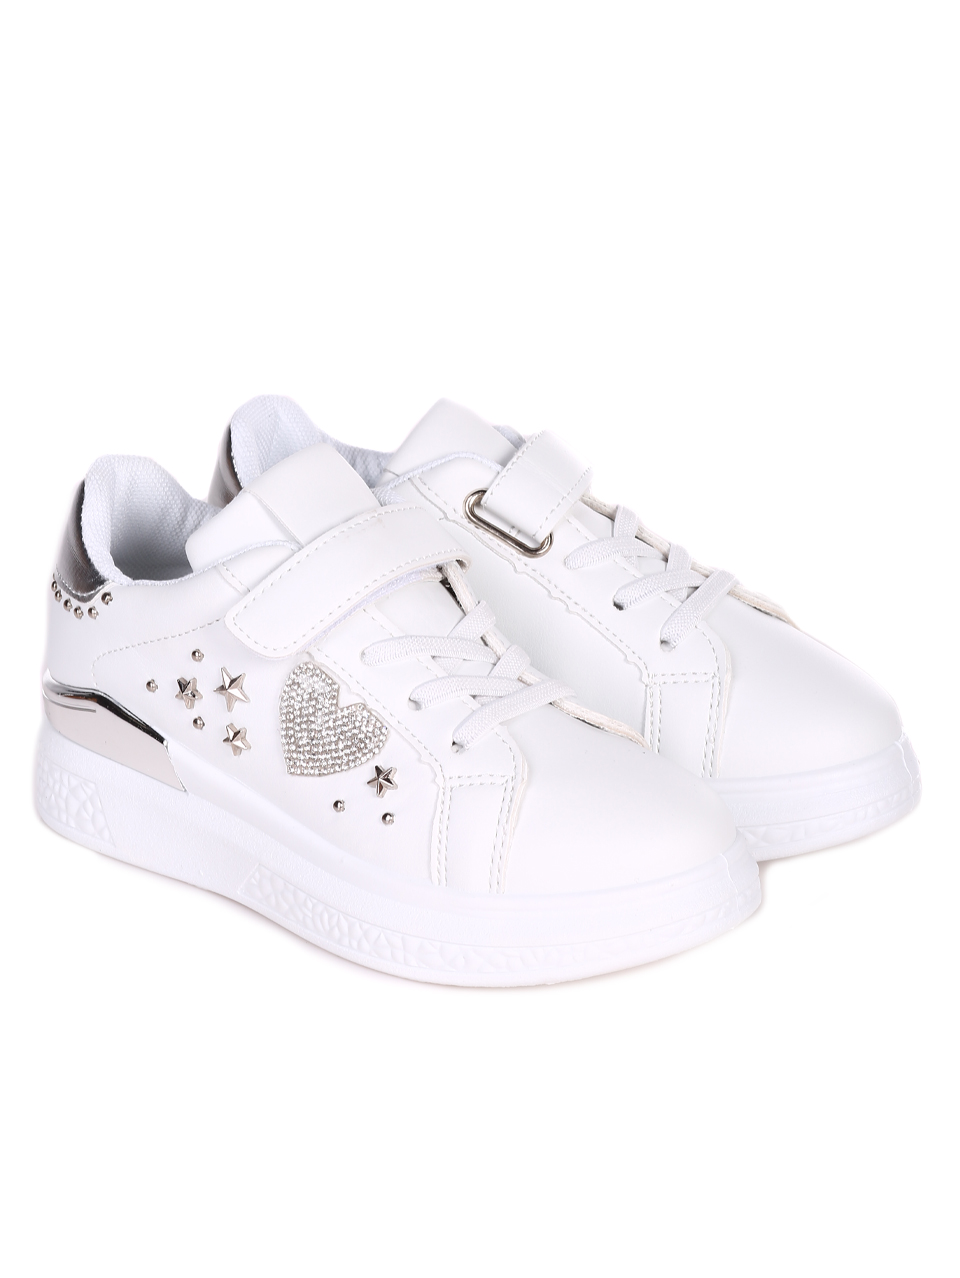 Комфортни детски обувки в бяло 18U-23050 white/silver